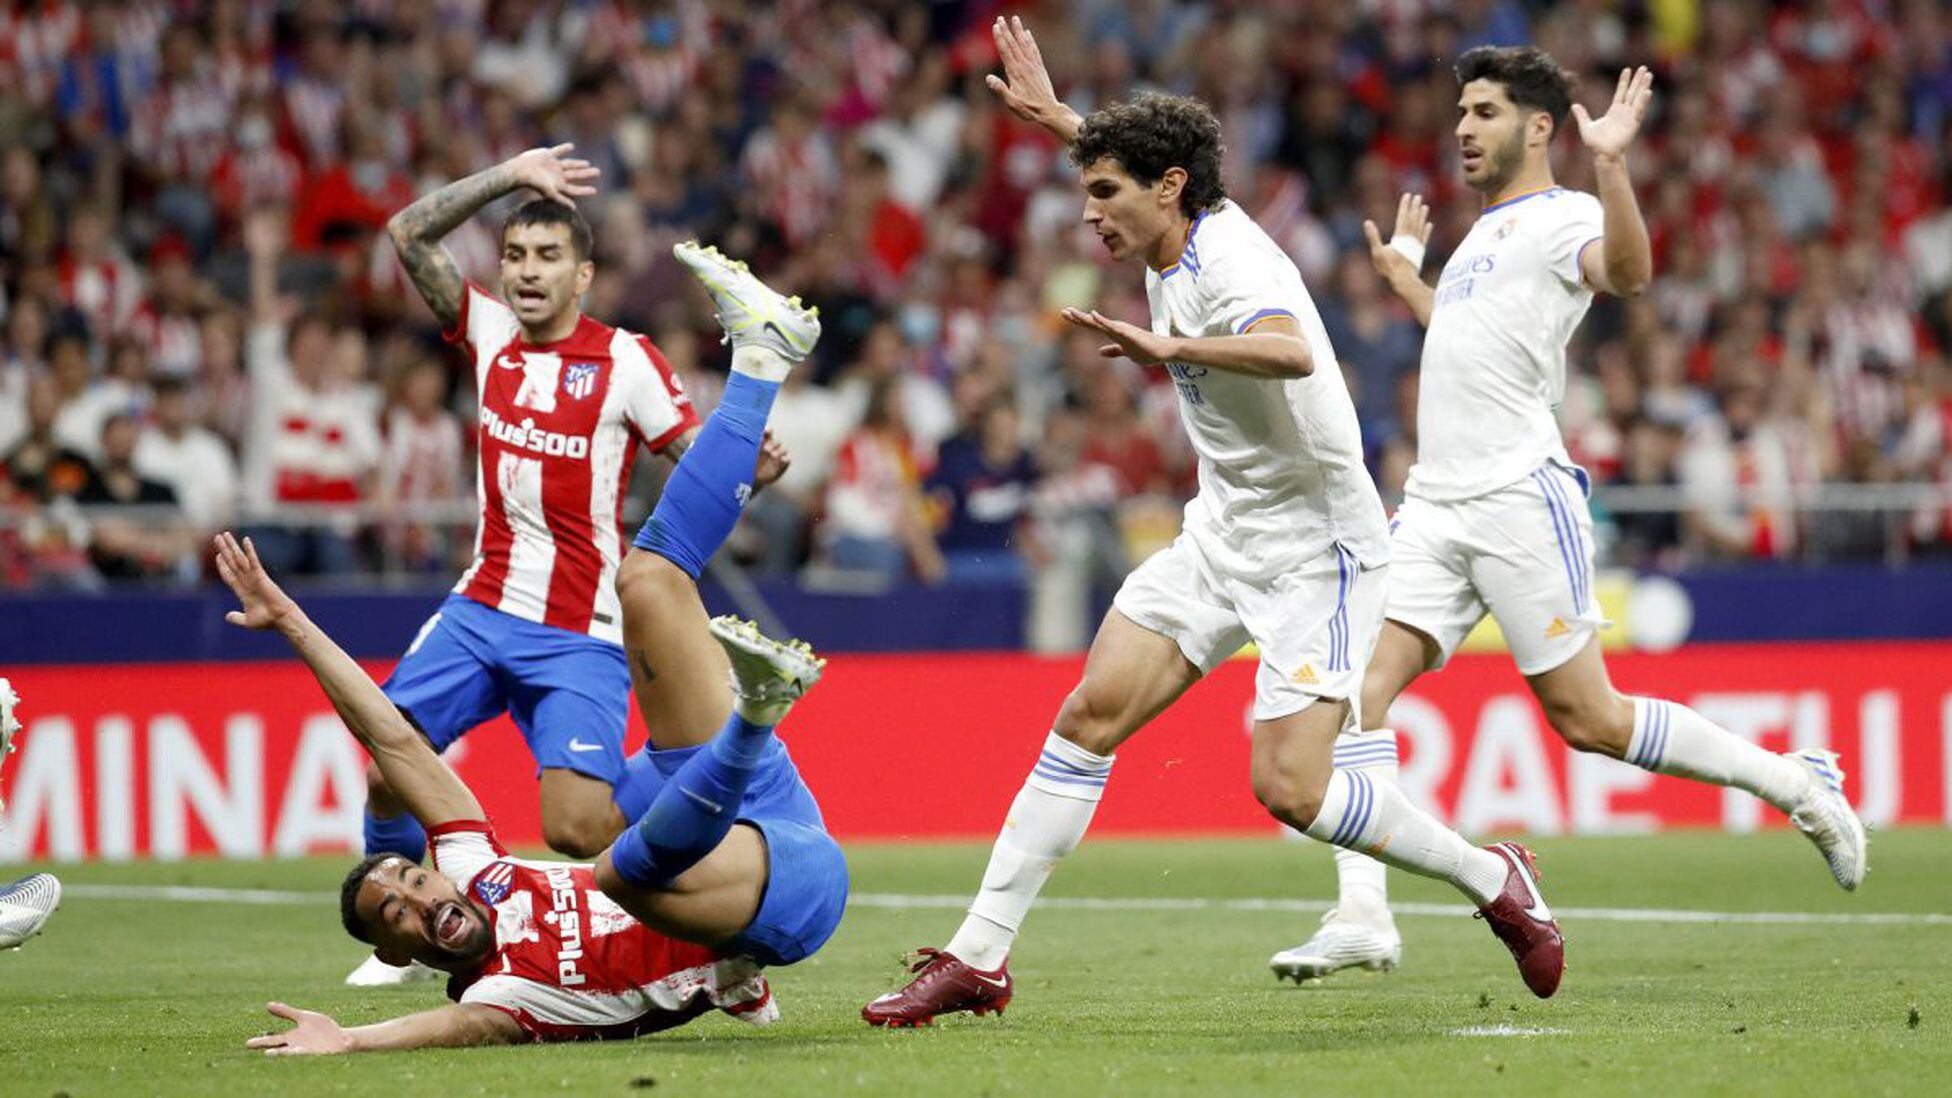 Atlético 1 - Real Madrid 0: resumen, resultado y goles | Derbi madrileño de Liga - AS.com